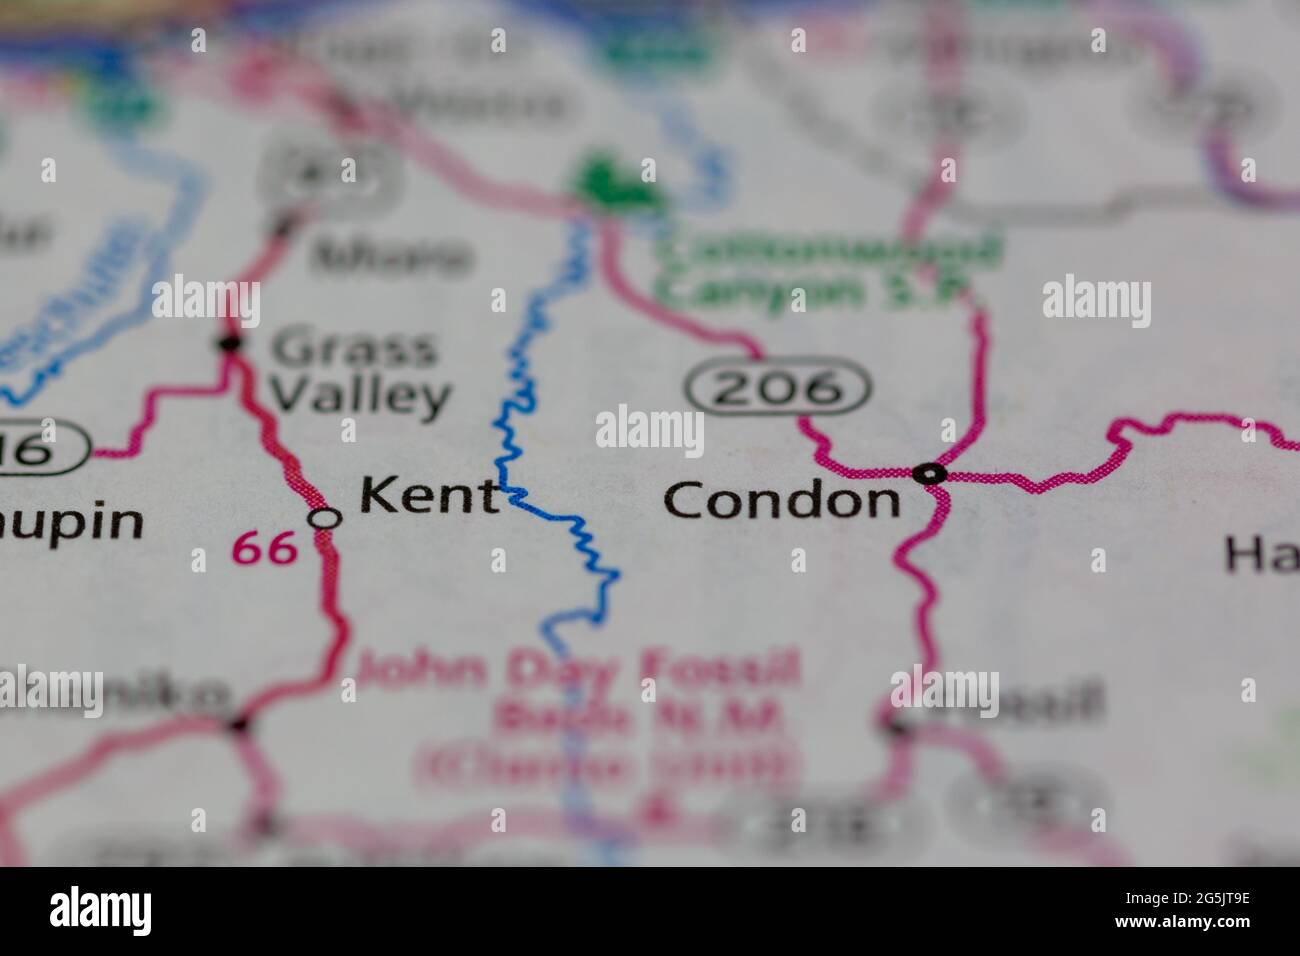 Kent Oregon Etats-Unis sur une carte de la géographie ou une carte routière Banque D'Images